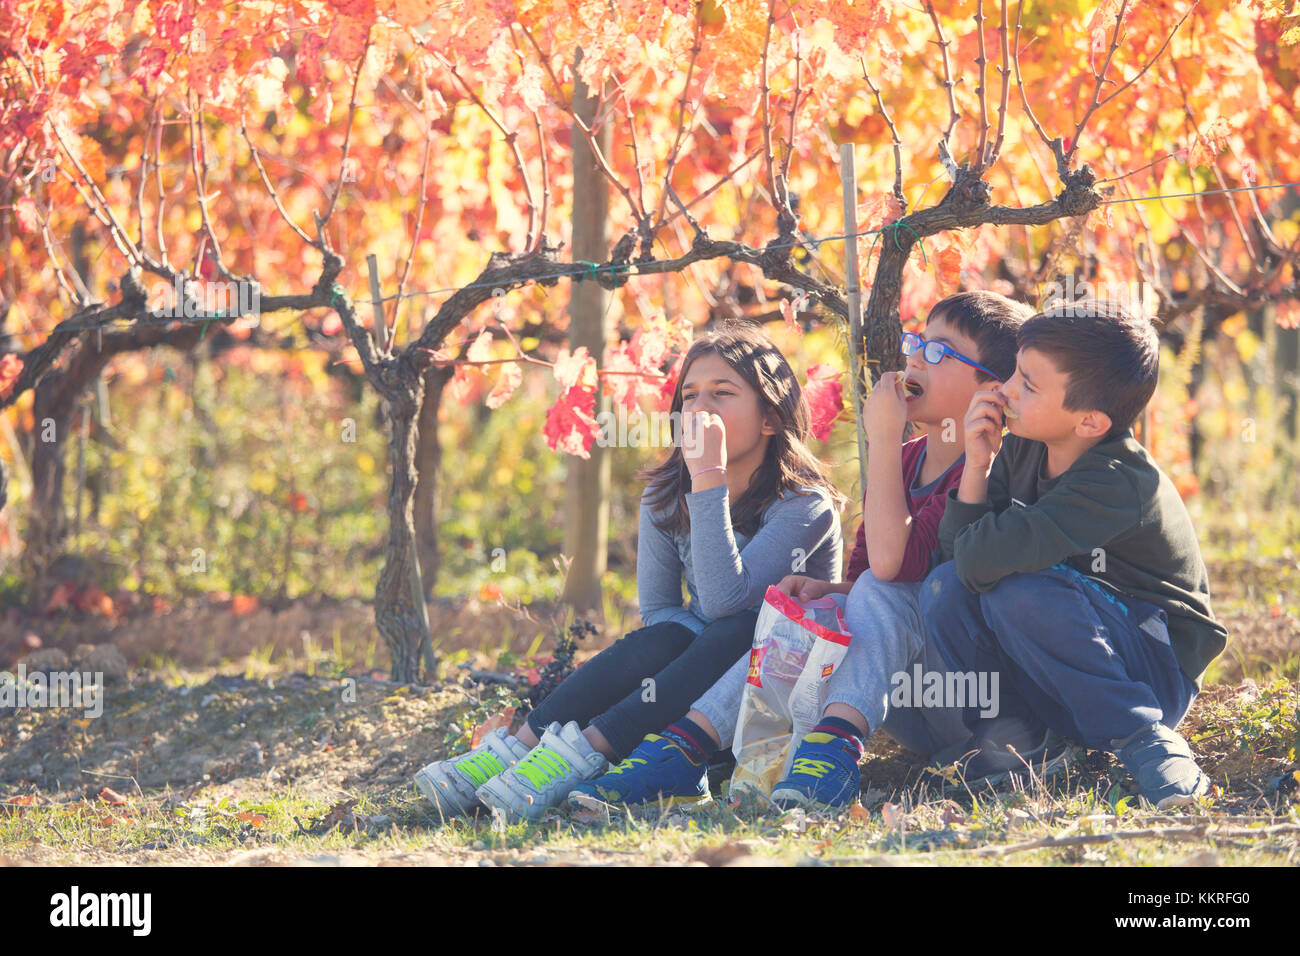 Europa, Italien, Umbrien, Perugia, Montefalco. Kinder spielen in einem Weinberg. Stockfoto